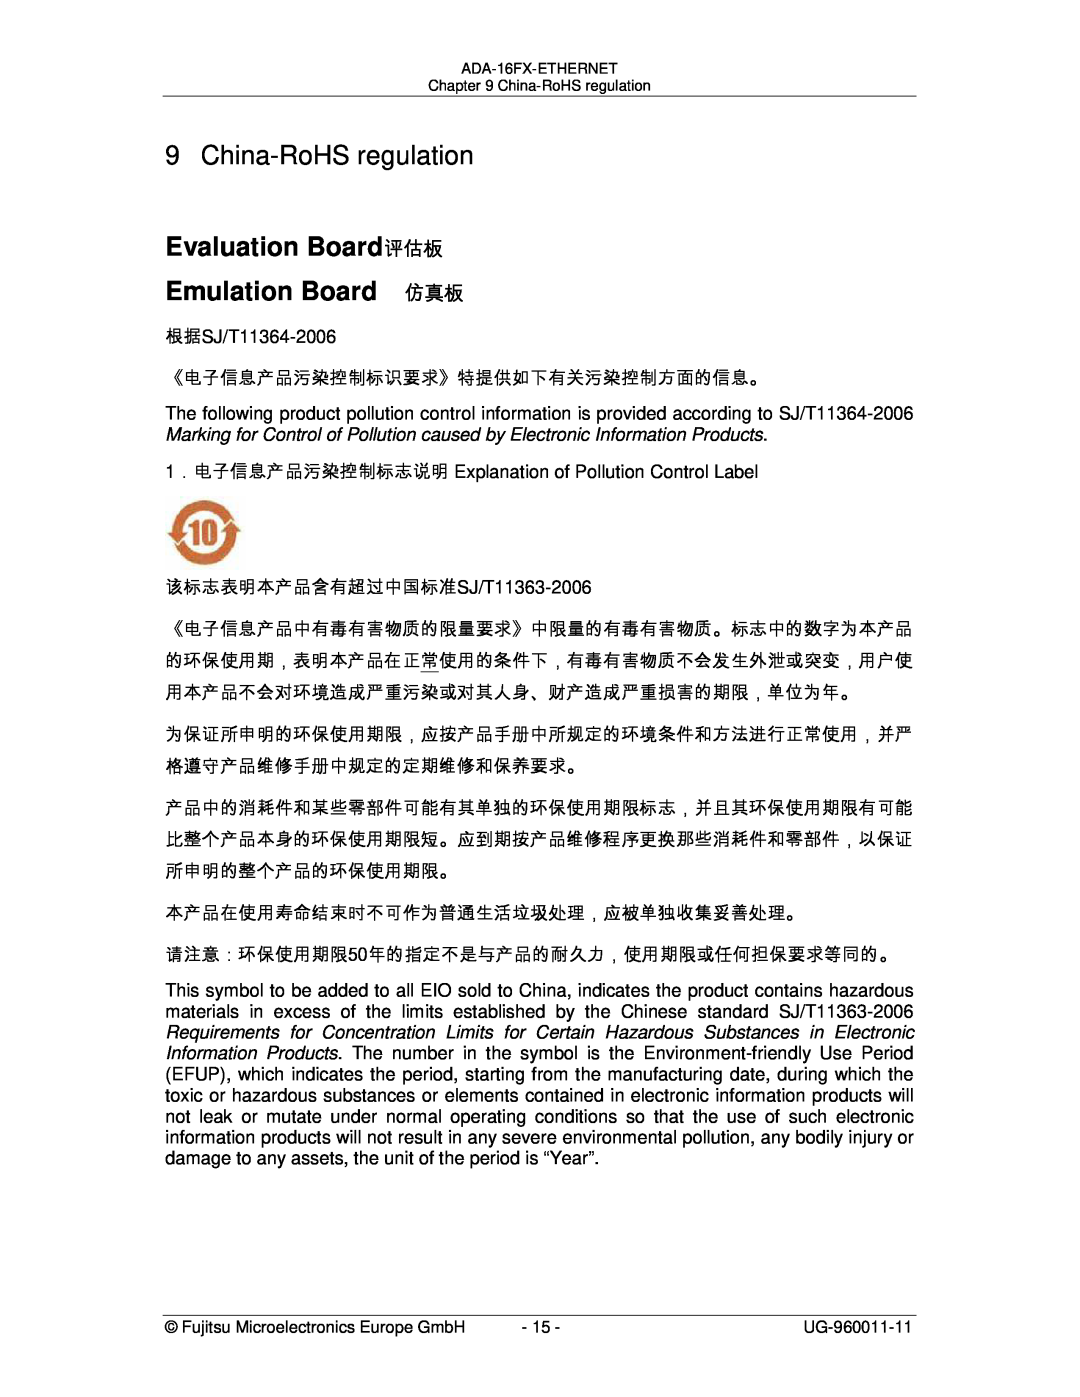 Fujitsu ADA-16FX manual China-RoHS regulation, 《电子信息产品污染控制标识要求》特提供如下有关污染控制方面的信息。, 该标志表明本产品含有超过中国标准SJ/T11363-2006 